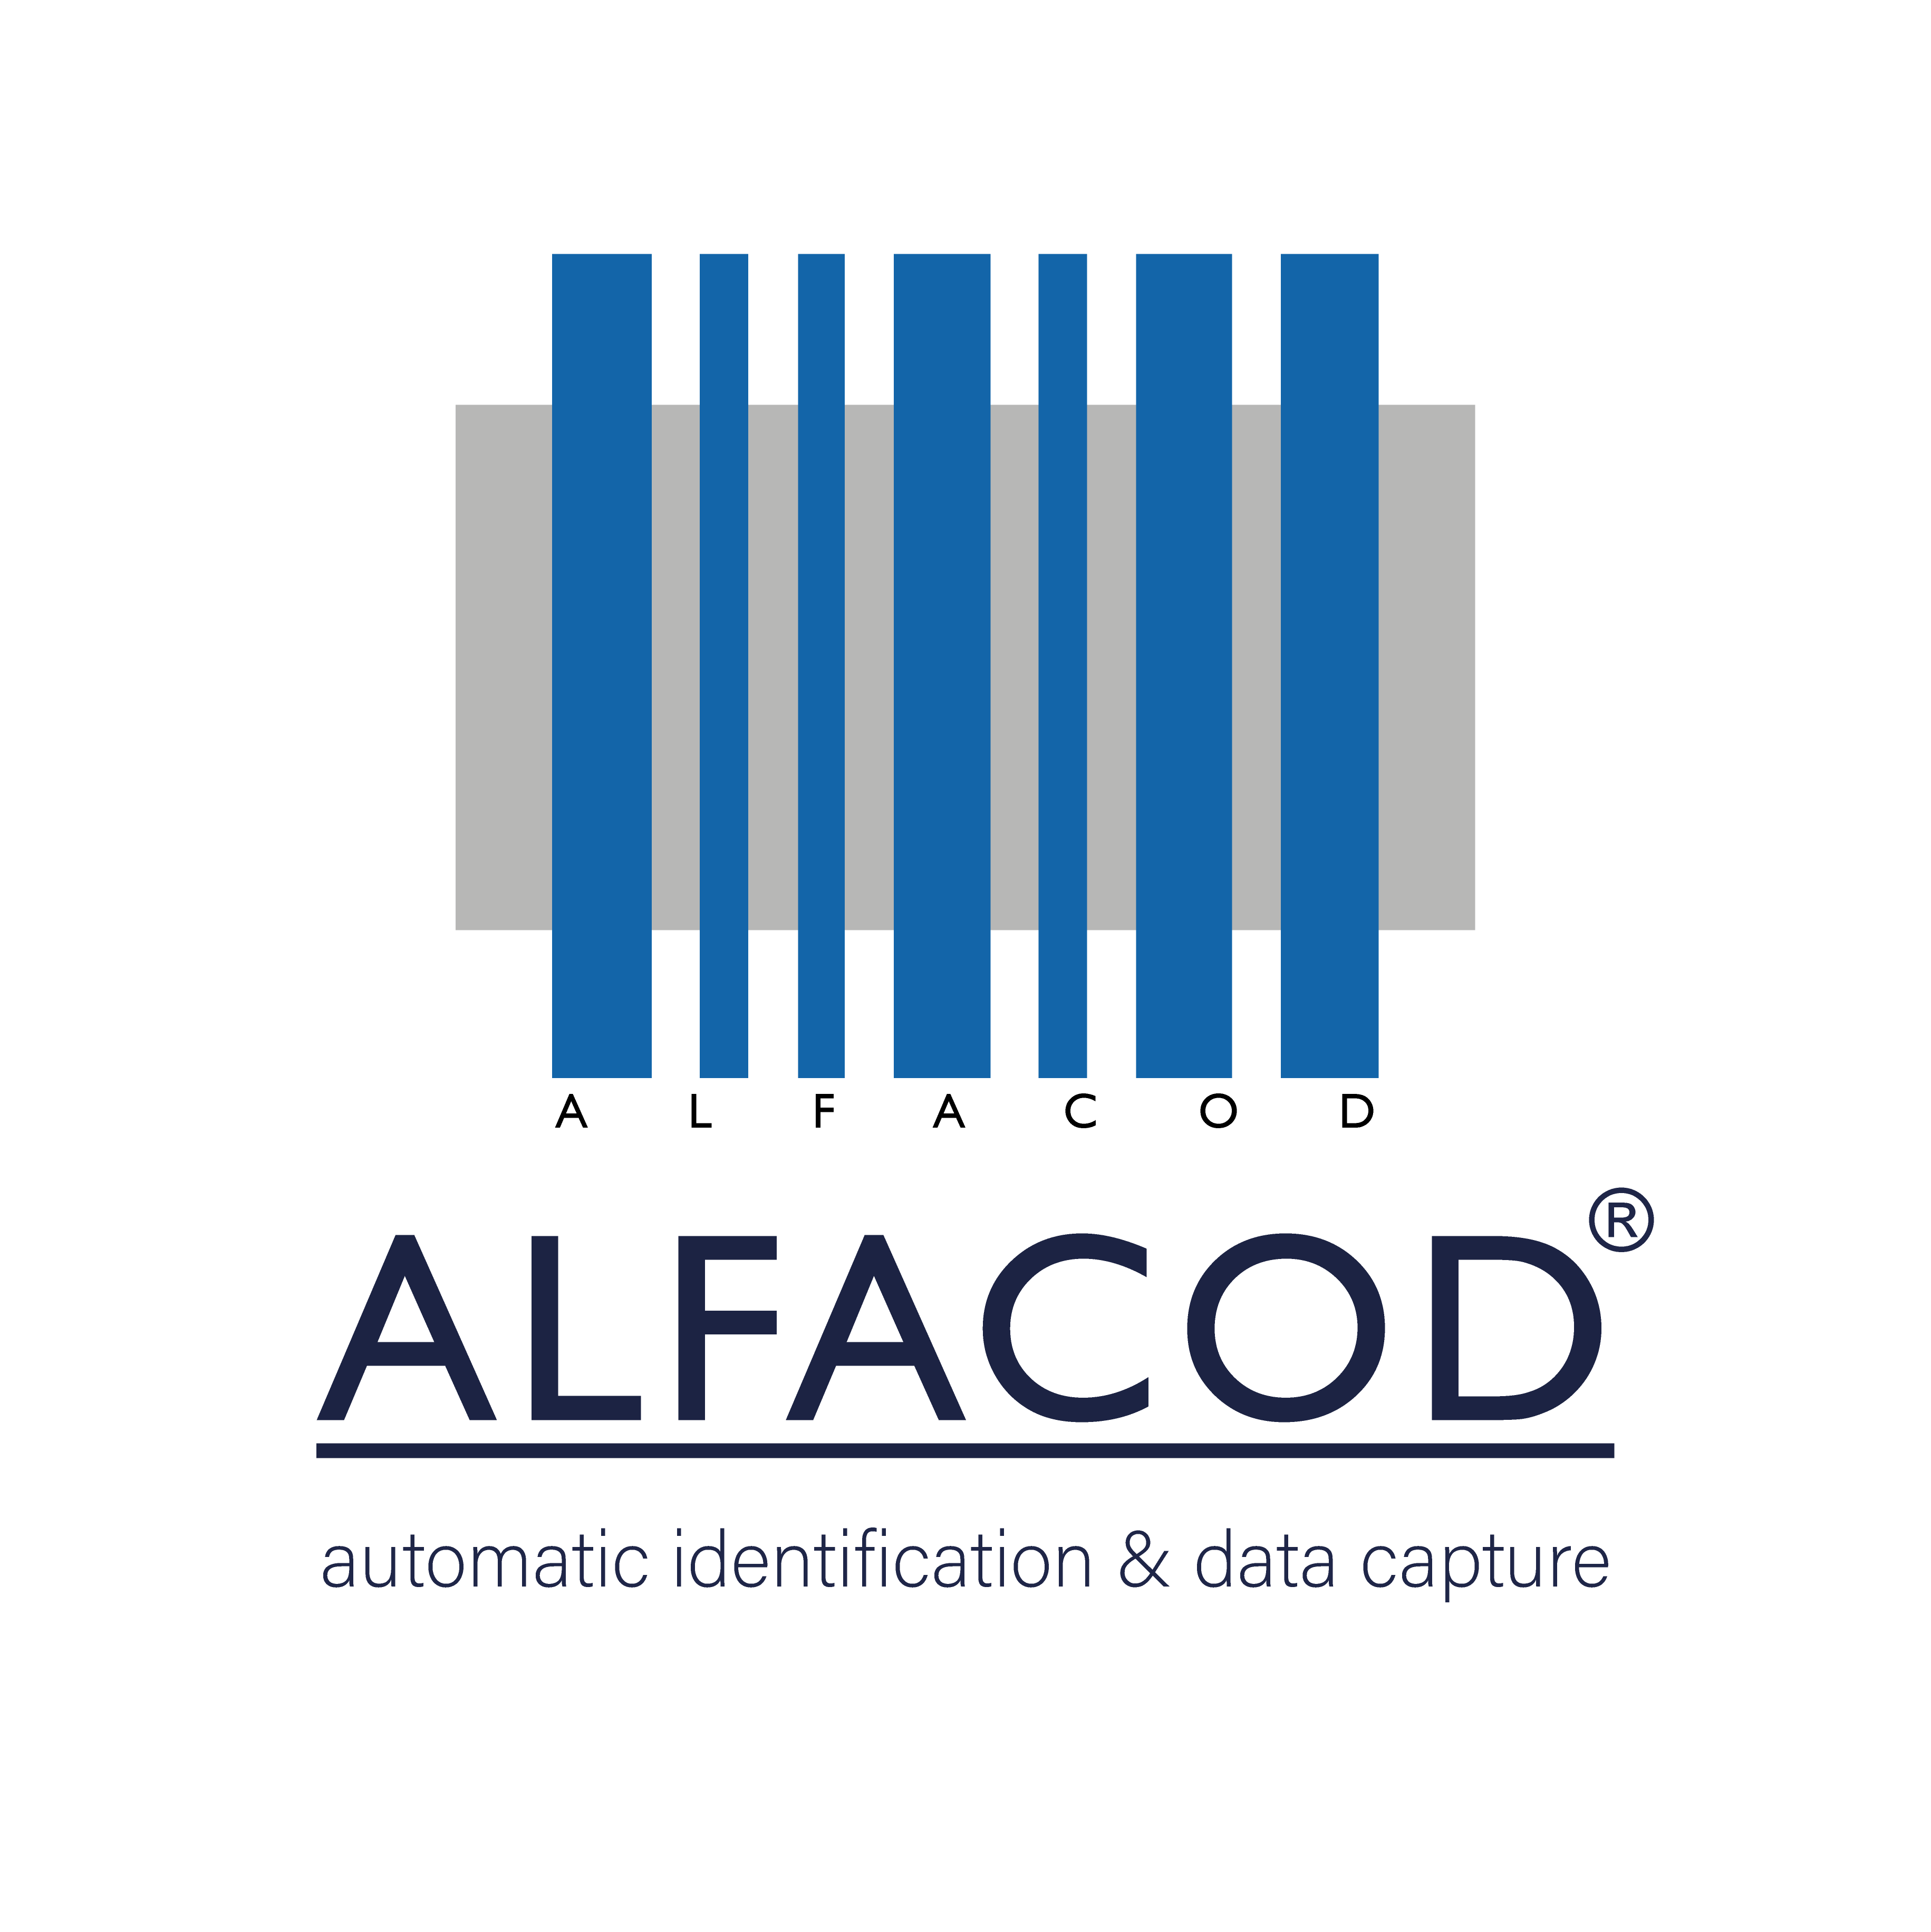 Alfacod sistemi di identificazione automatica e mobile computing